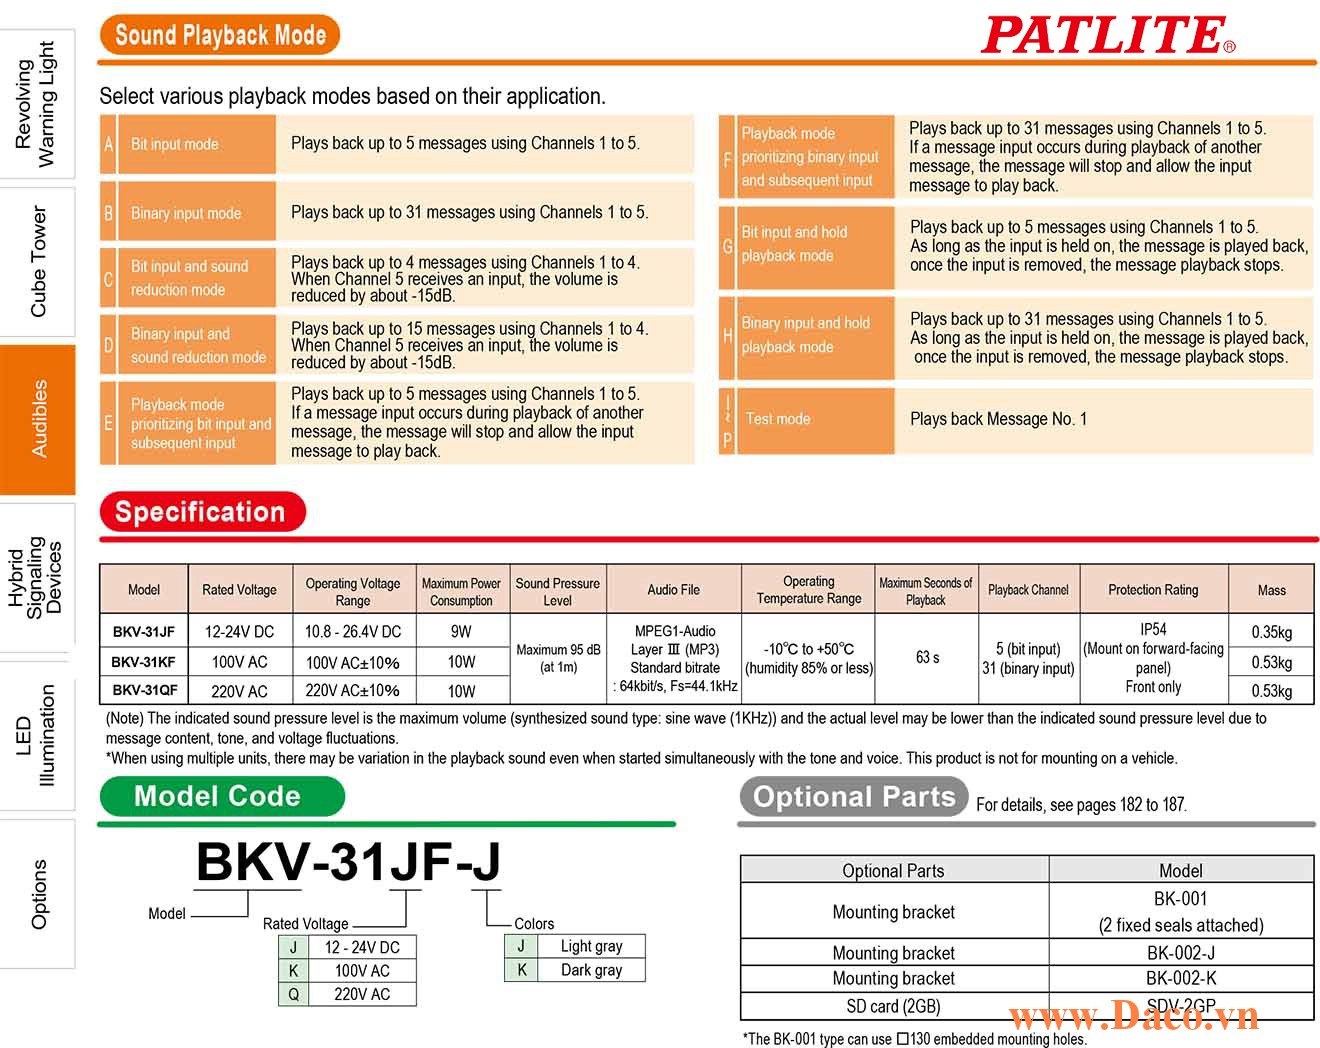 BK-24A-K Loa báo tín hiệu tủ điện âm MP3 Patlite 32 kênh âm thanh ghi sẵn 95dB IP54